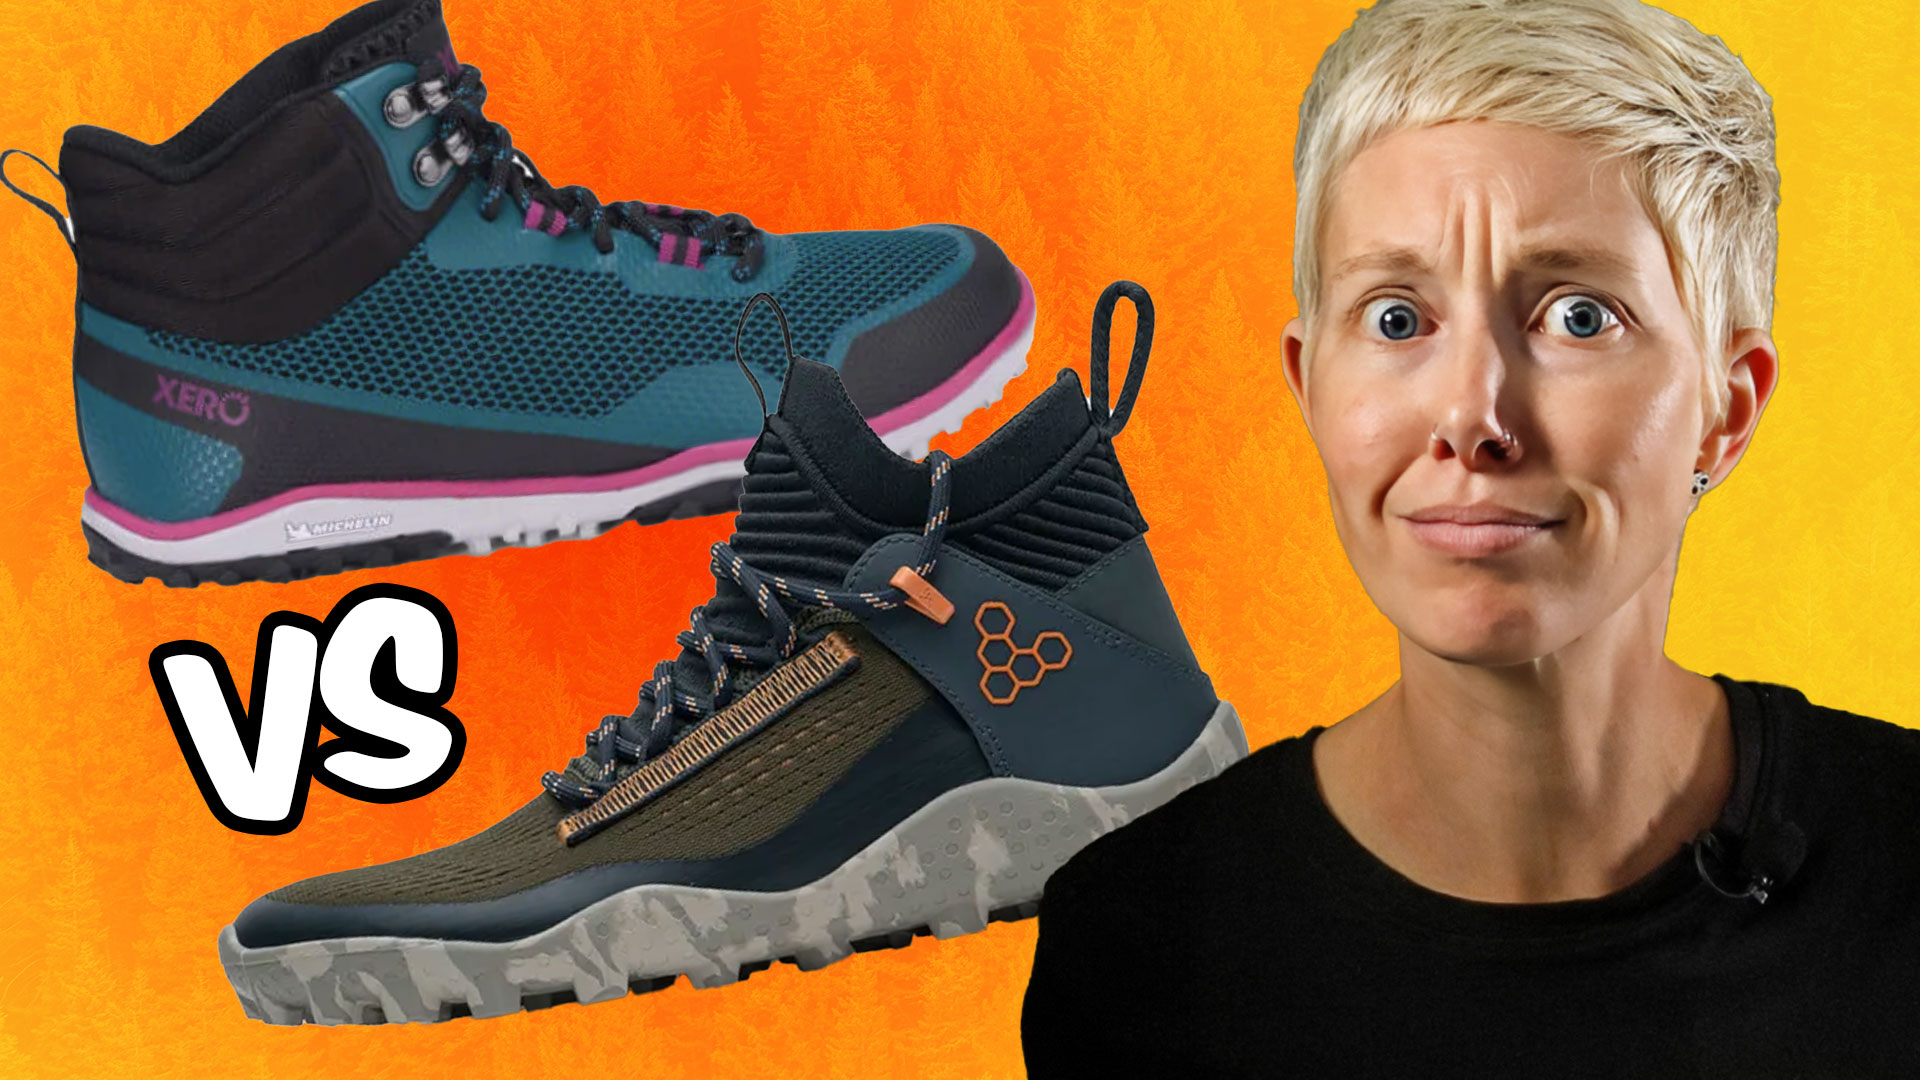 Hiking Footwear 101: 8 Tips for a Comfortable Trek - Oboz Footwear